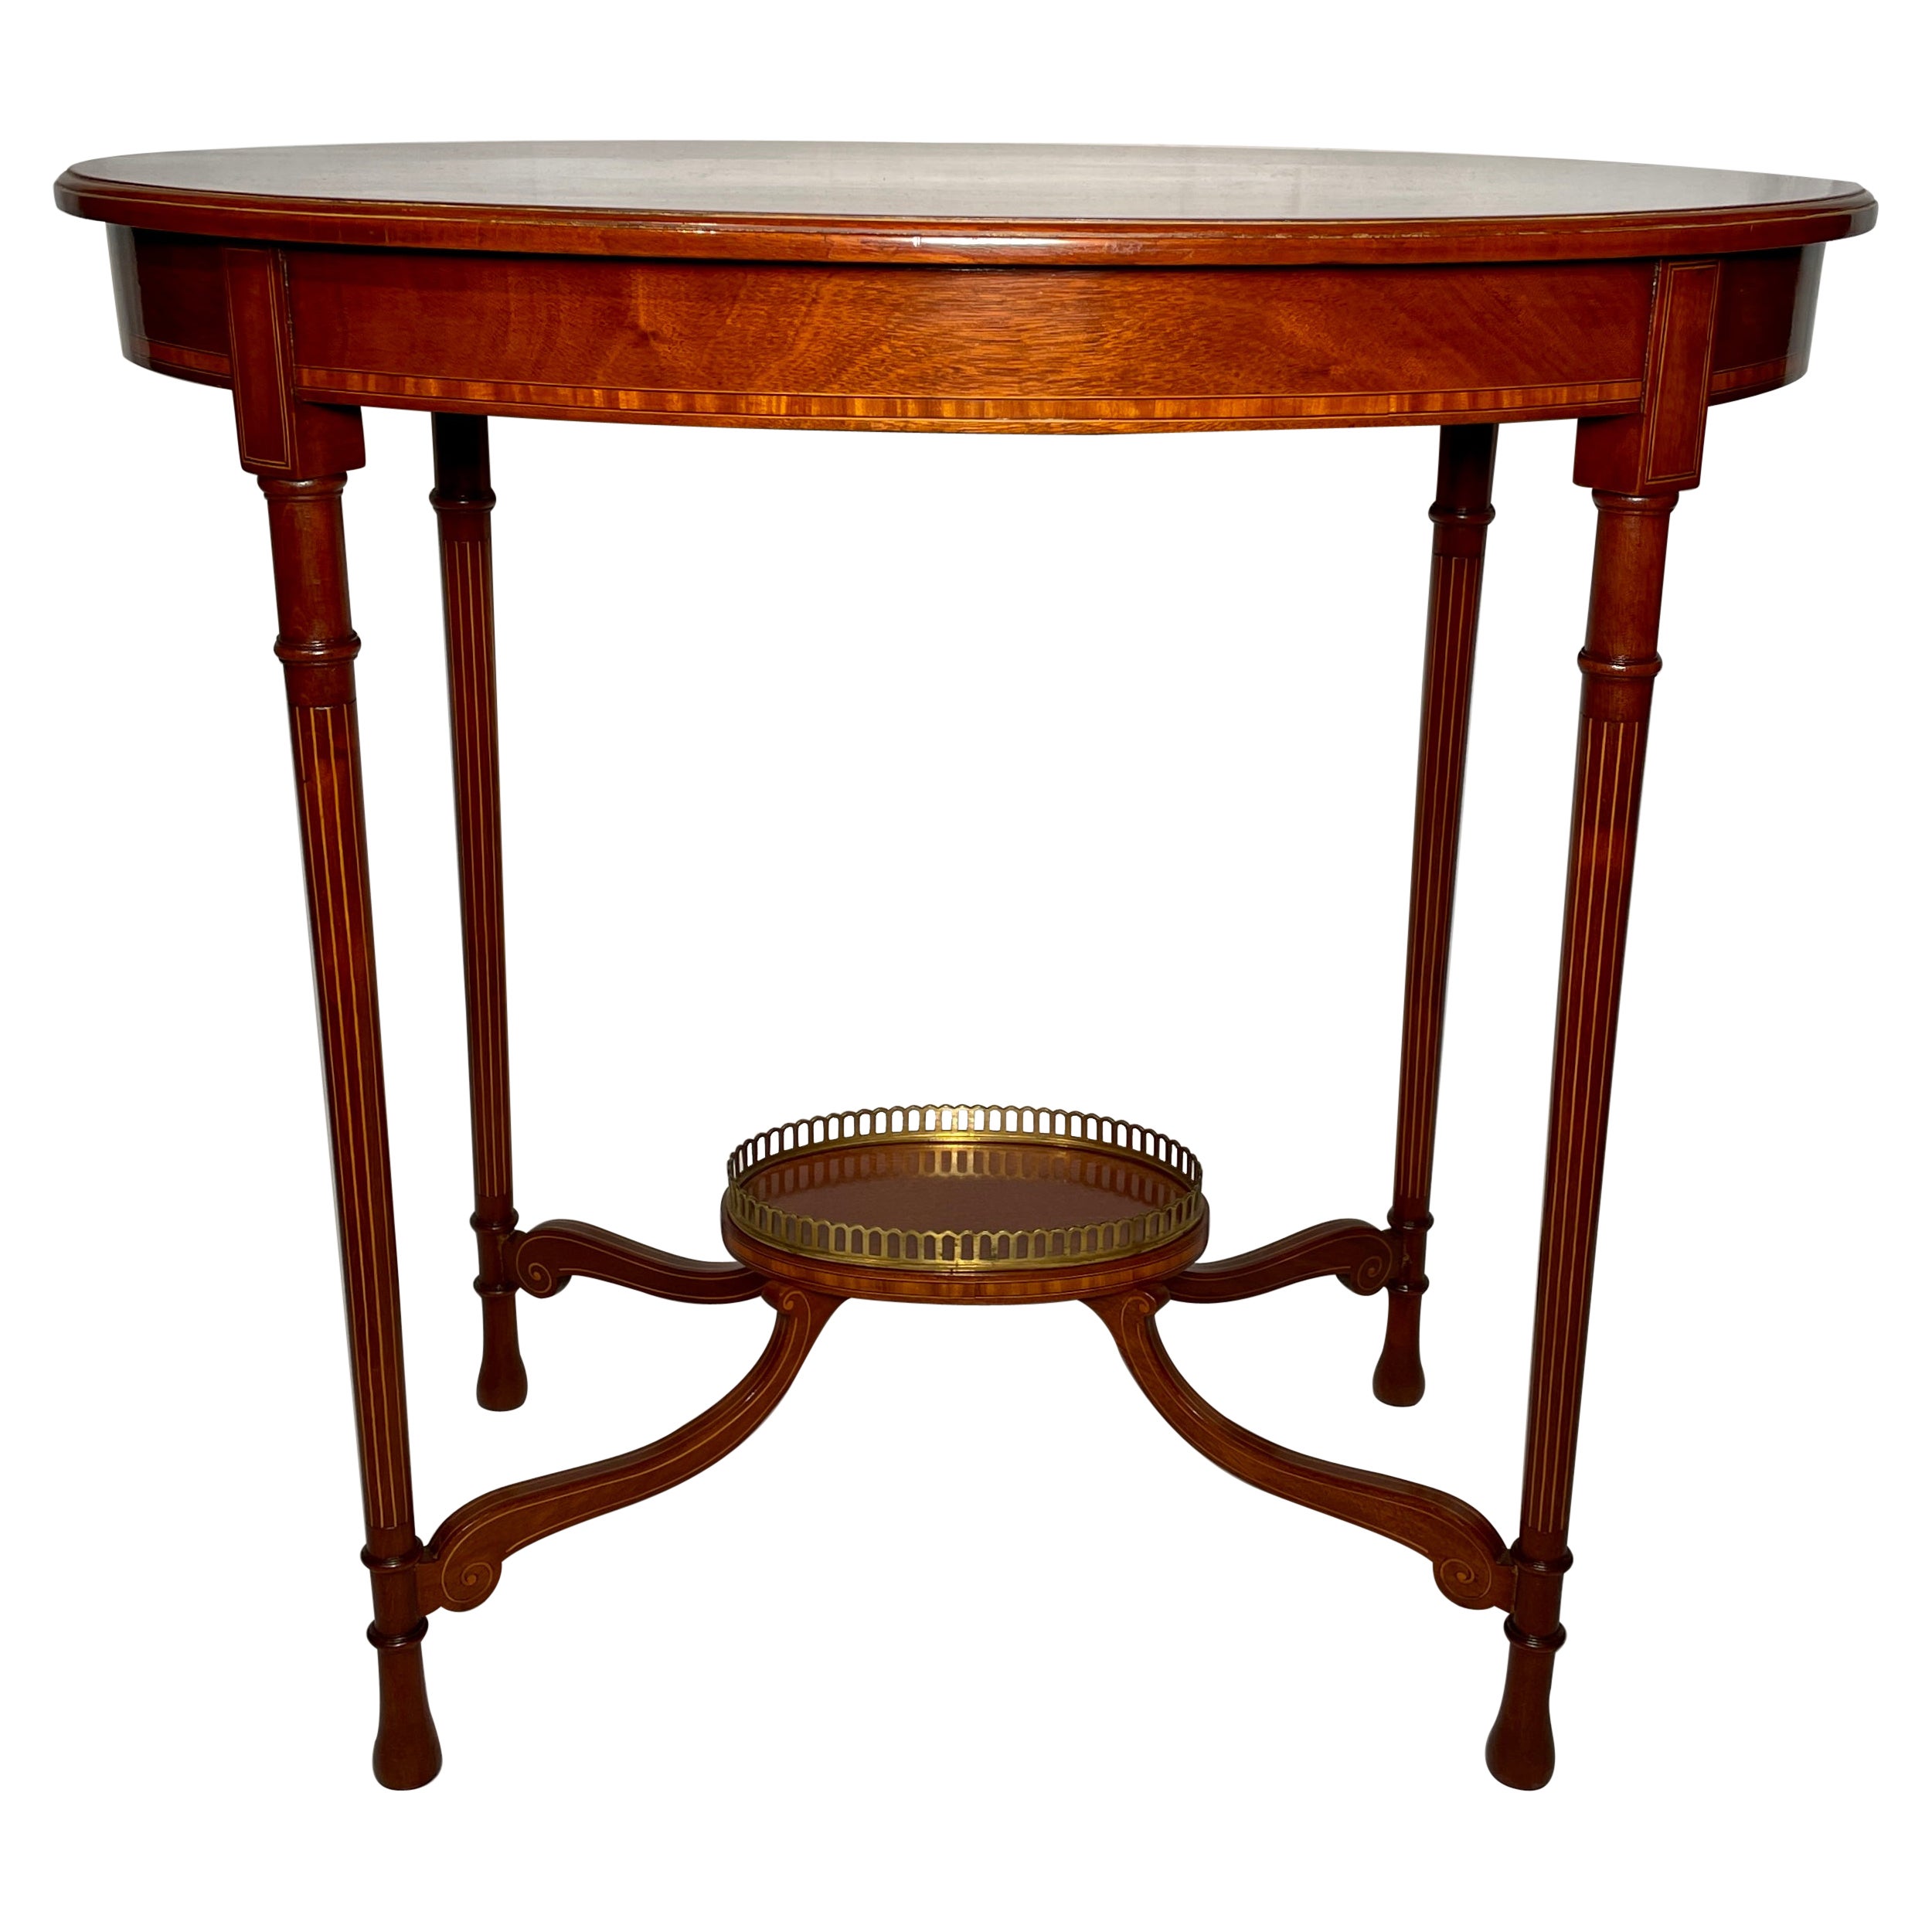 Antiker englischer ovaler Mahagoni-Tisch des späten 19. Jahrhunderts mit Intarsien.